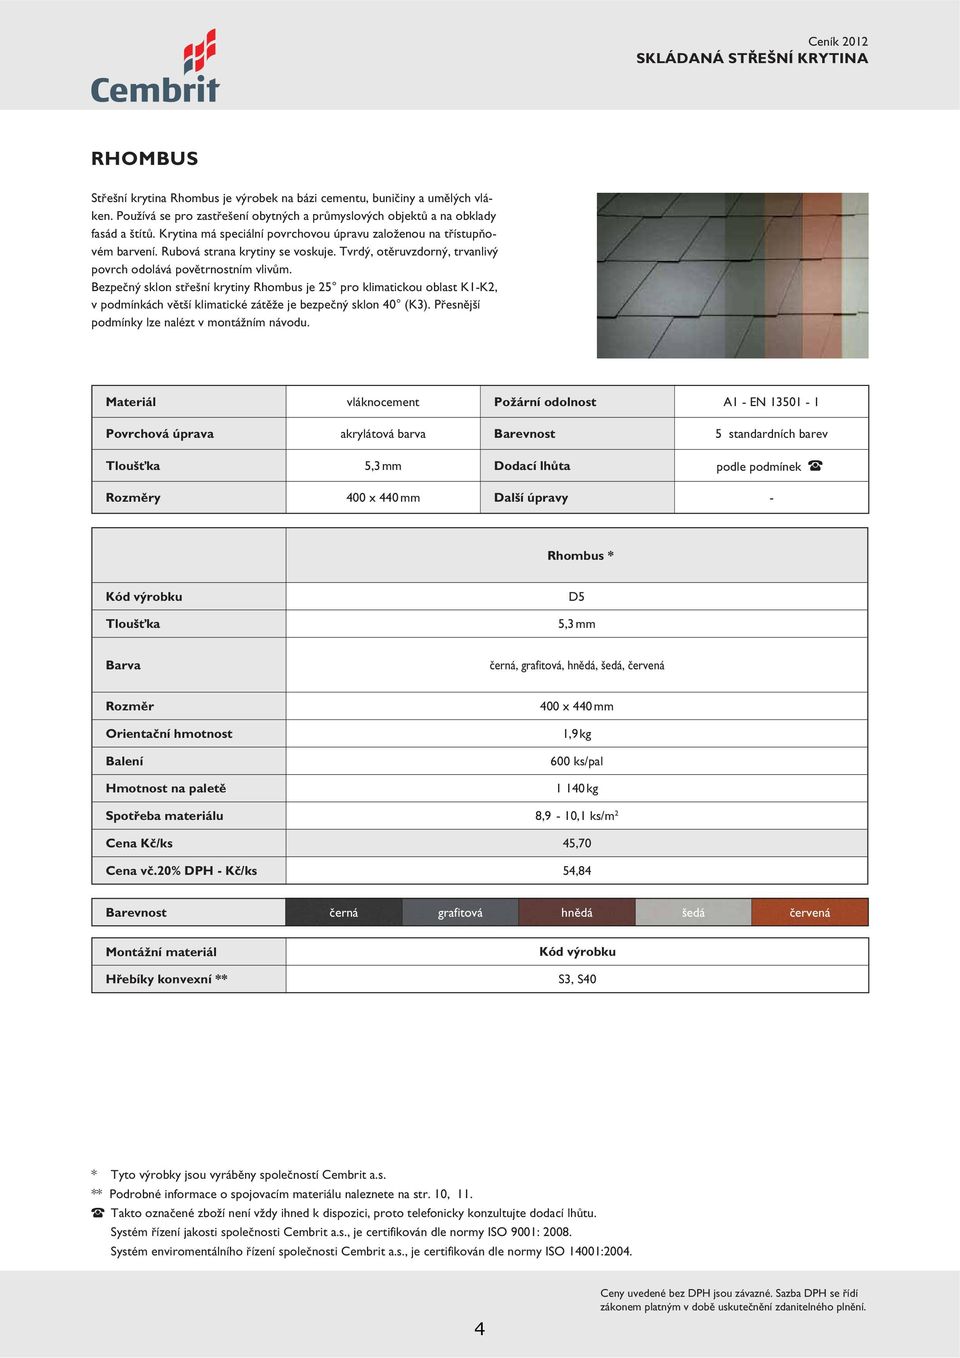 Bezpečný sklon střešní krytiny Rhombus je 25 pro klimatickou oblast K1-K2, v podmínkách větší klimatické zátěže je bezpečný sklon 40 (K3). Přesnější podmínky lze nalézt v montážním návodu.